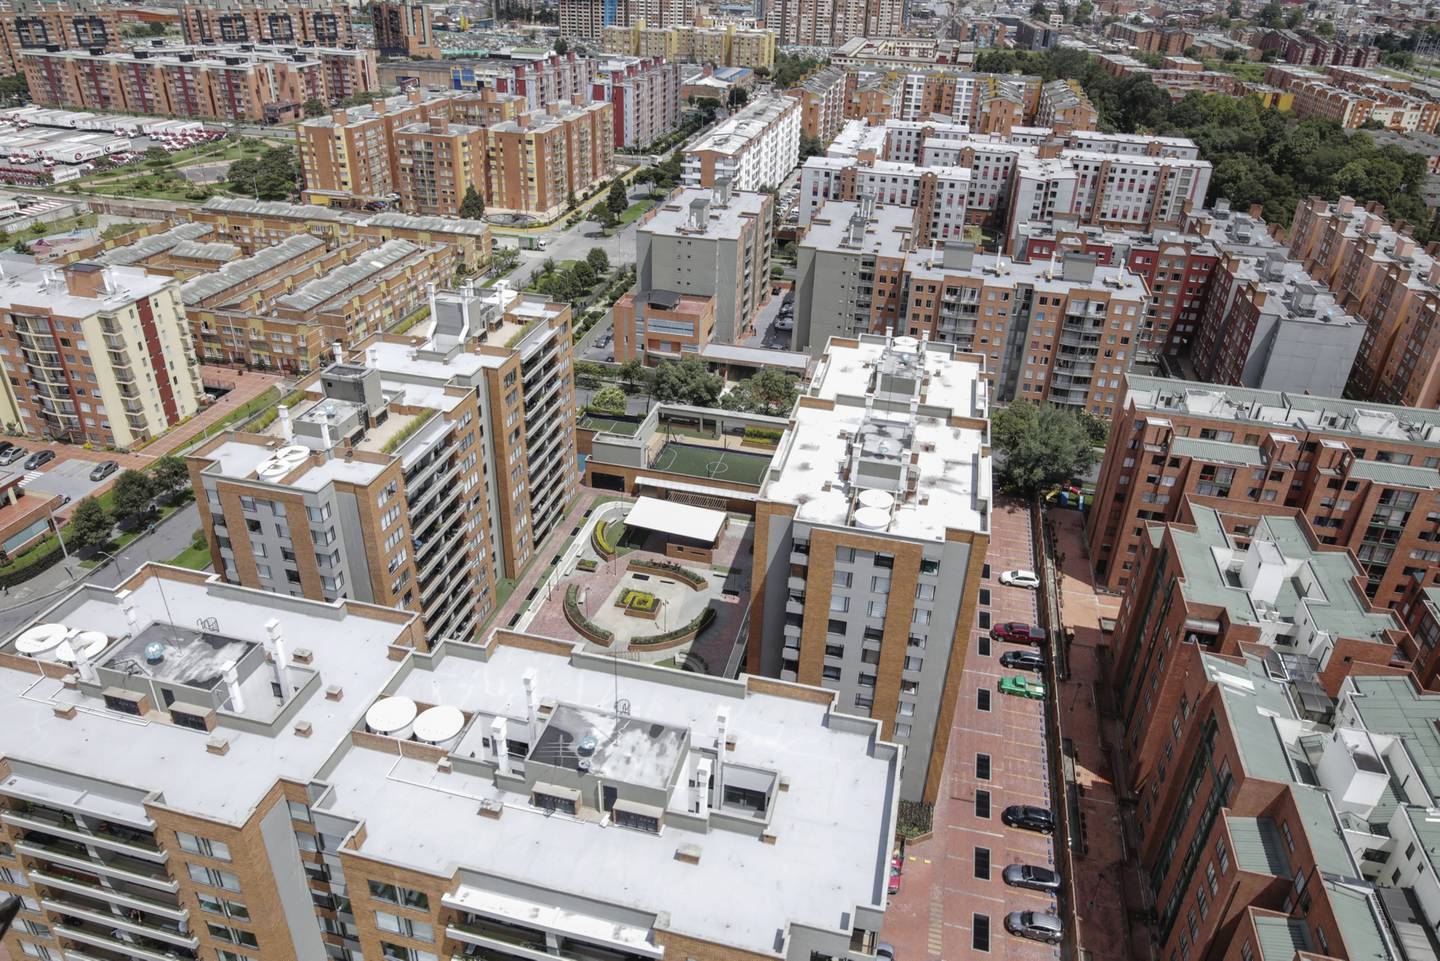 Complejos de viviendas aparecen en esta fotografía aérea tomada sobre Bogotá, Colombia, el martes 7 de abril de 2020.dfd